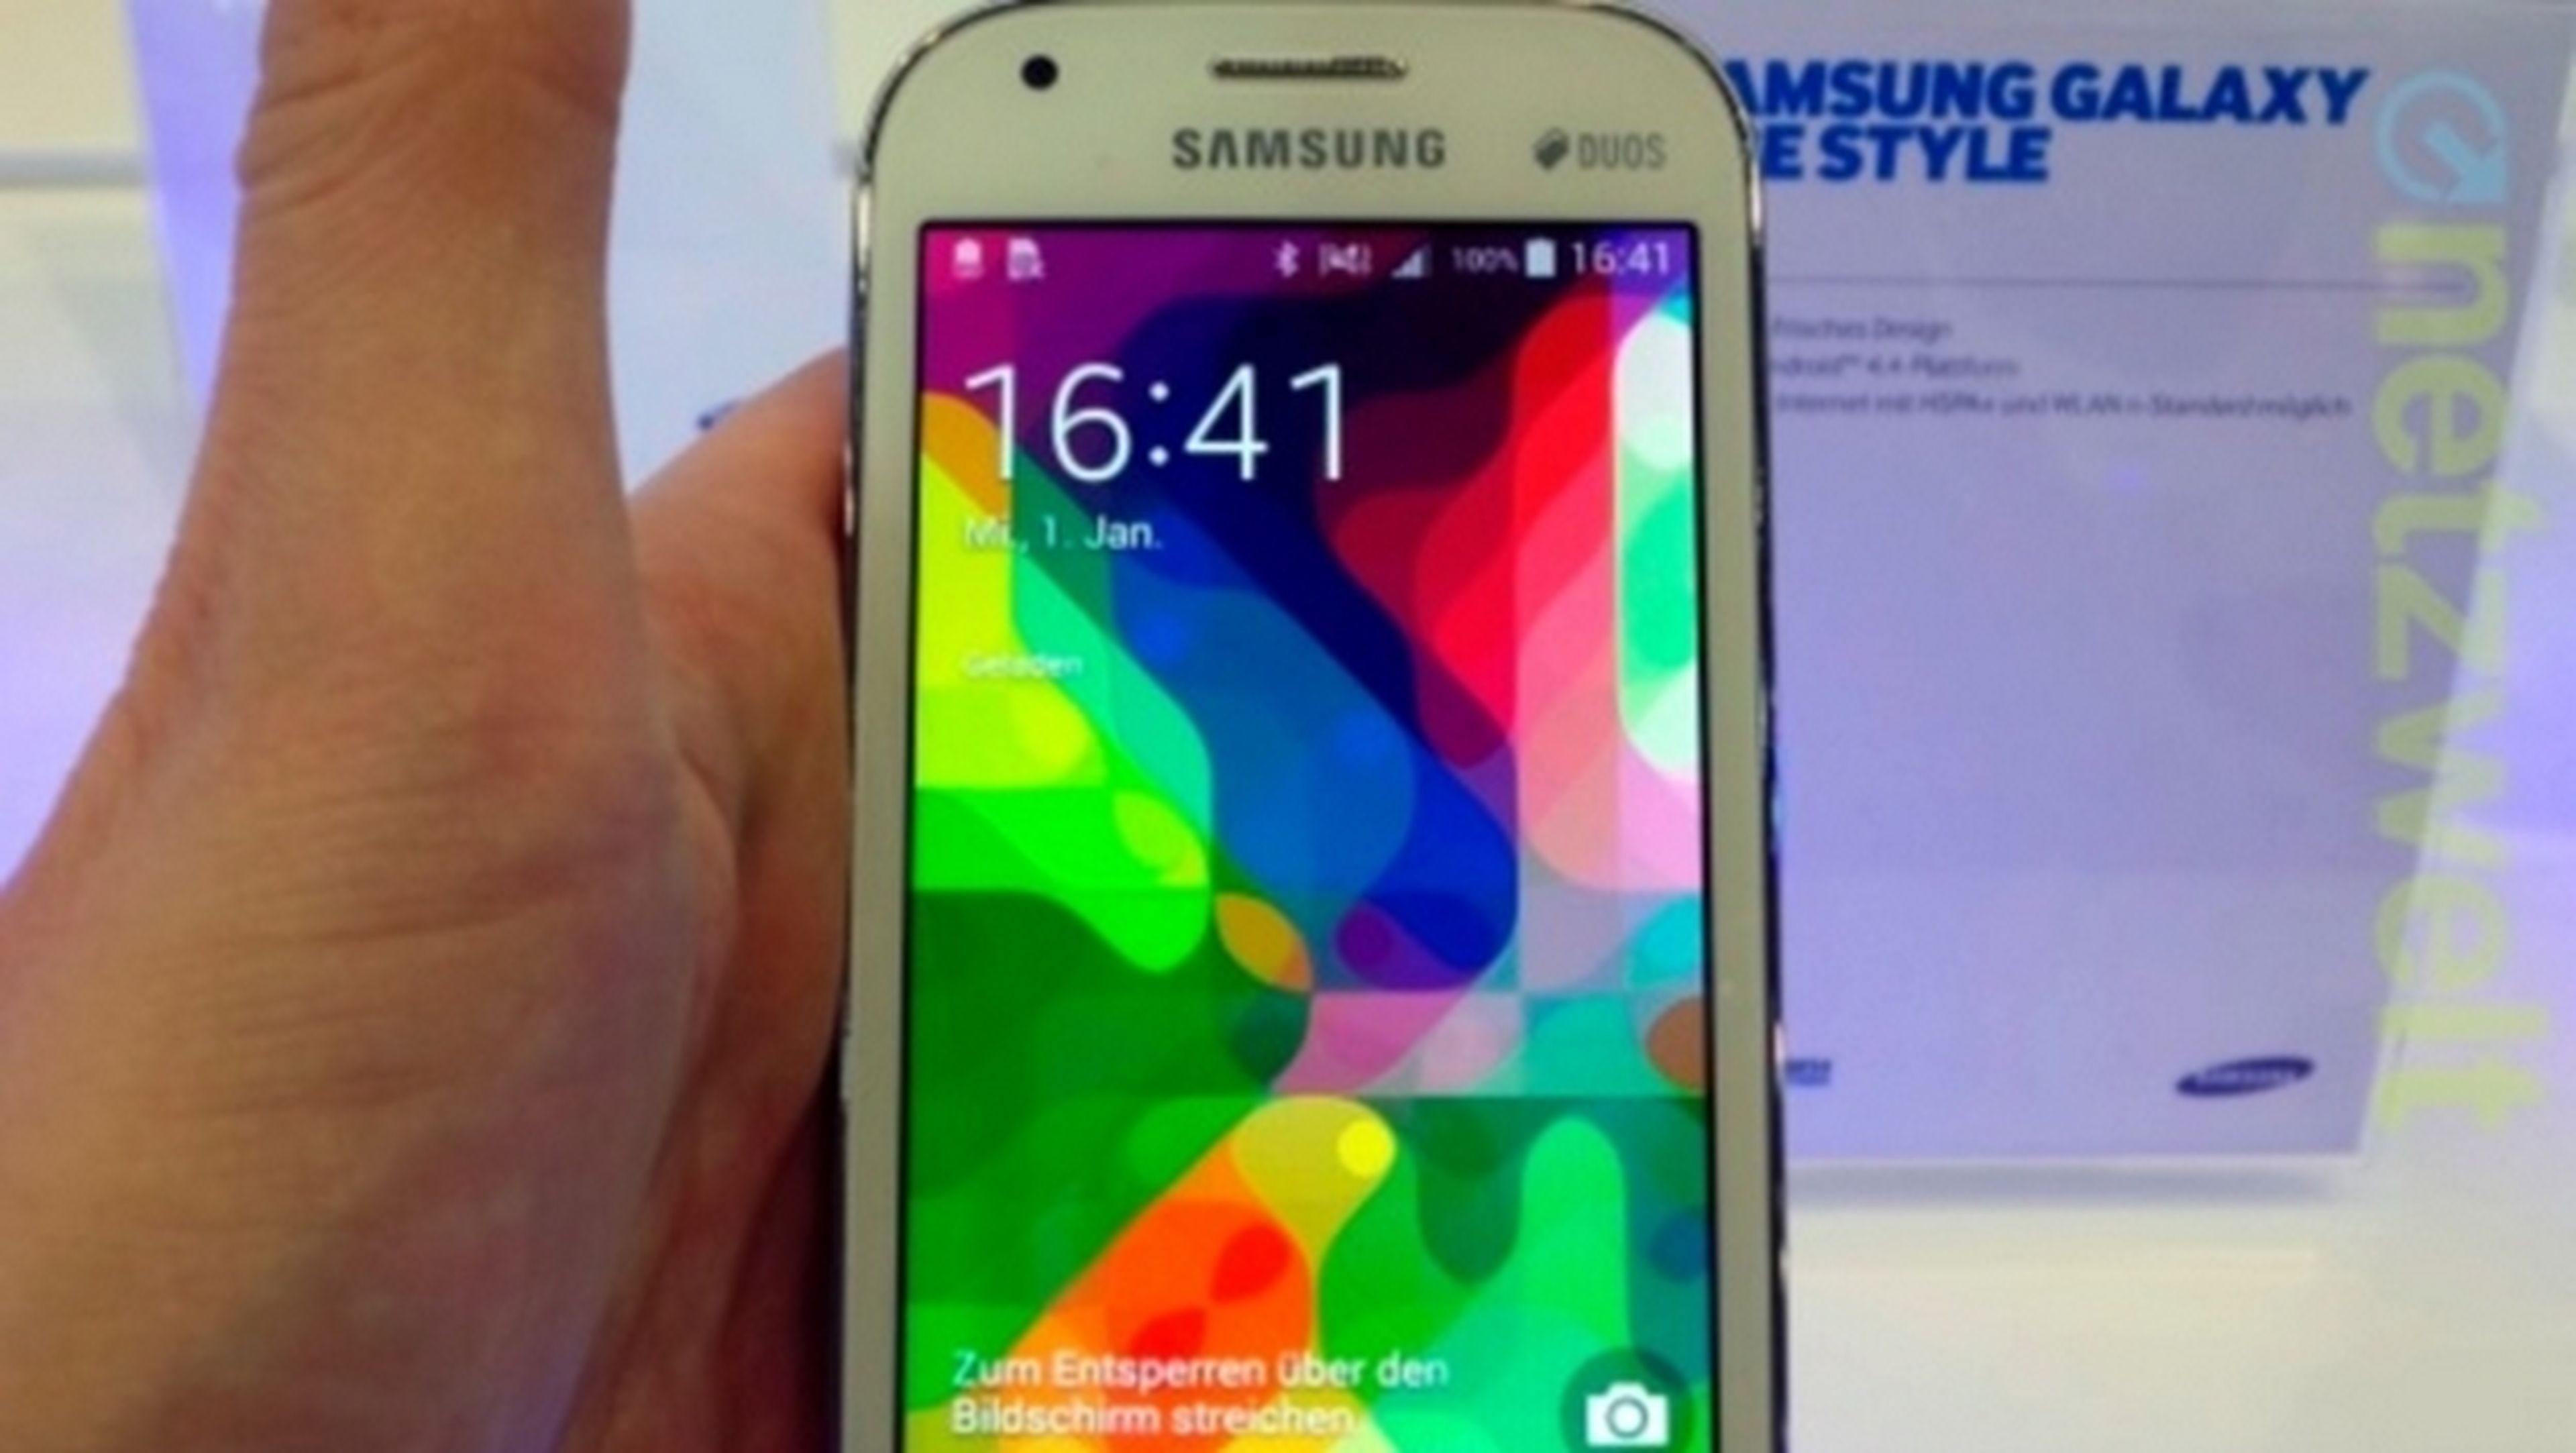 Samsung Galaxy Ace Style, un smartphone de gama baja con Android 4.4 KitKat